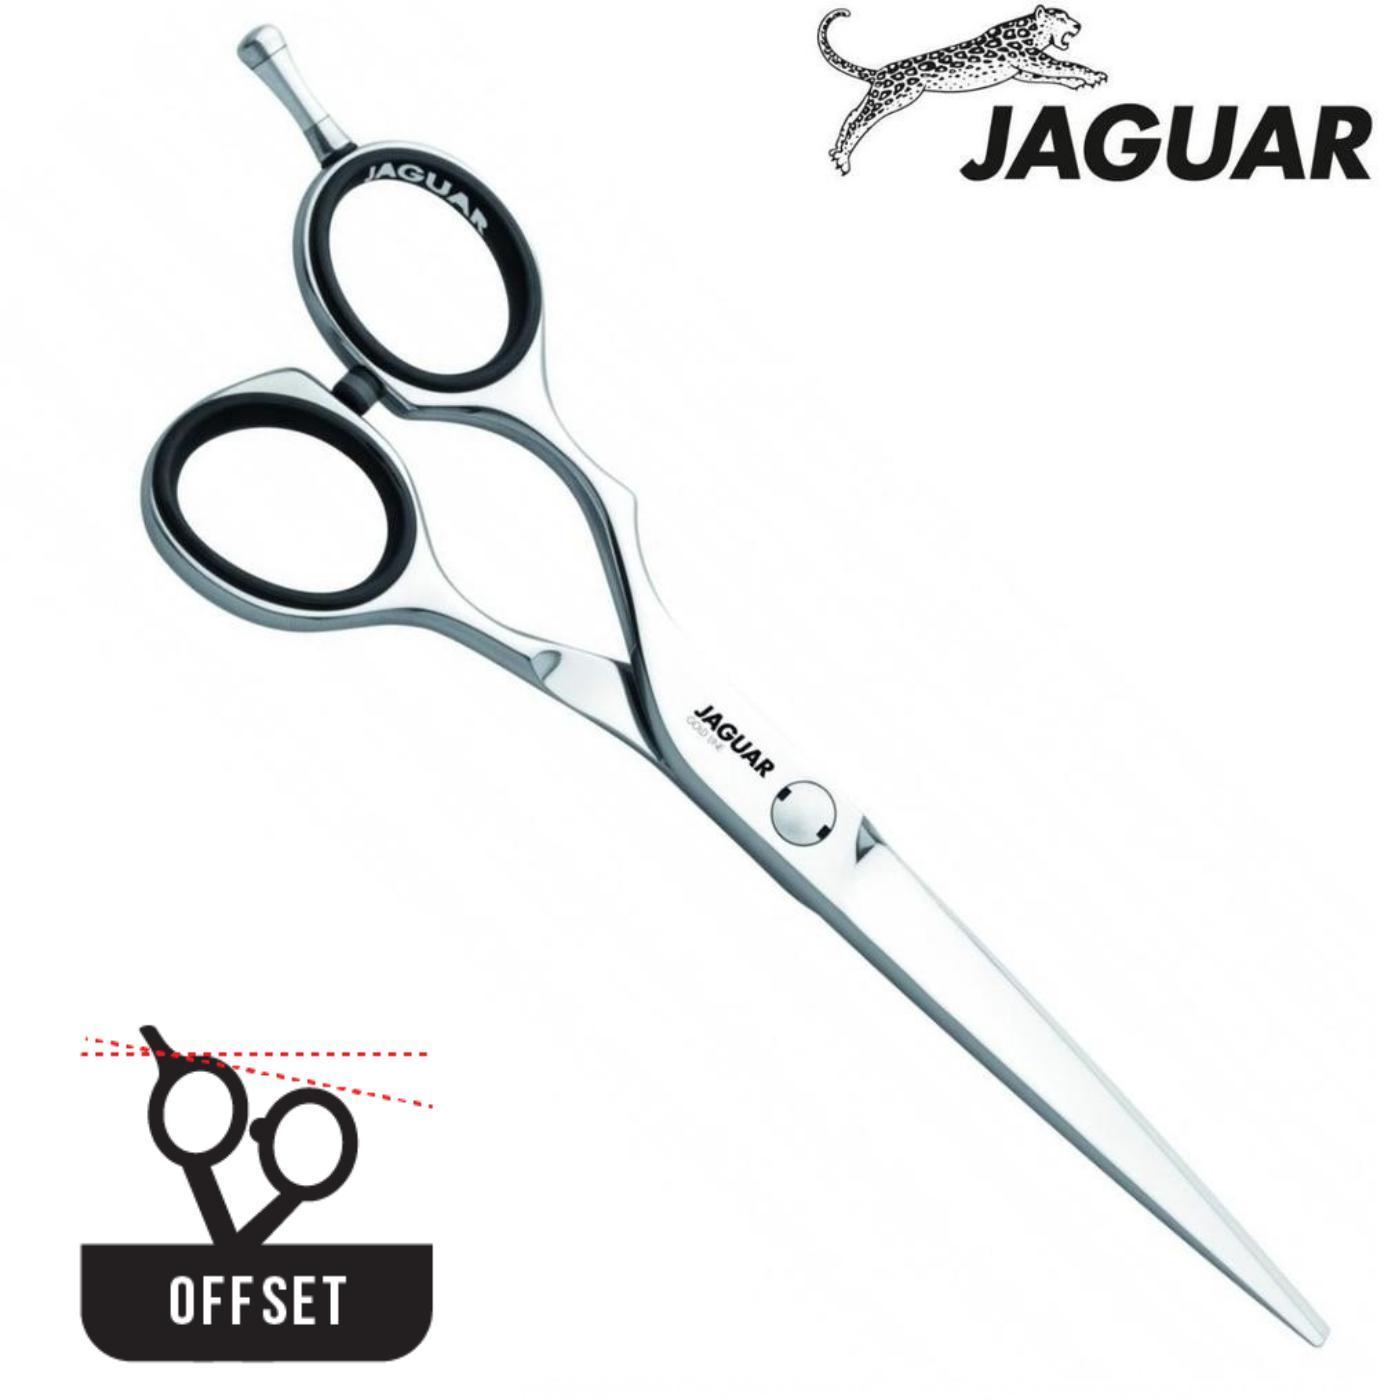 Jaguar Hairdressing Shears - Japan Scissors USA